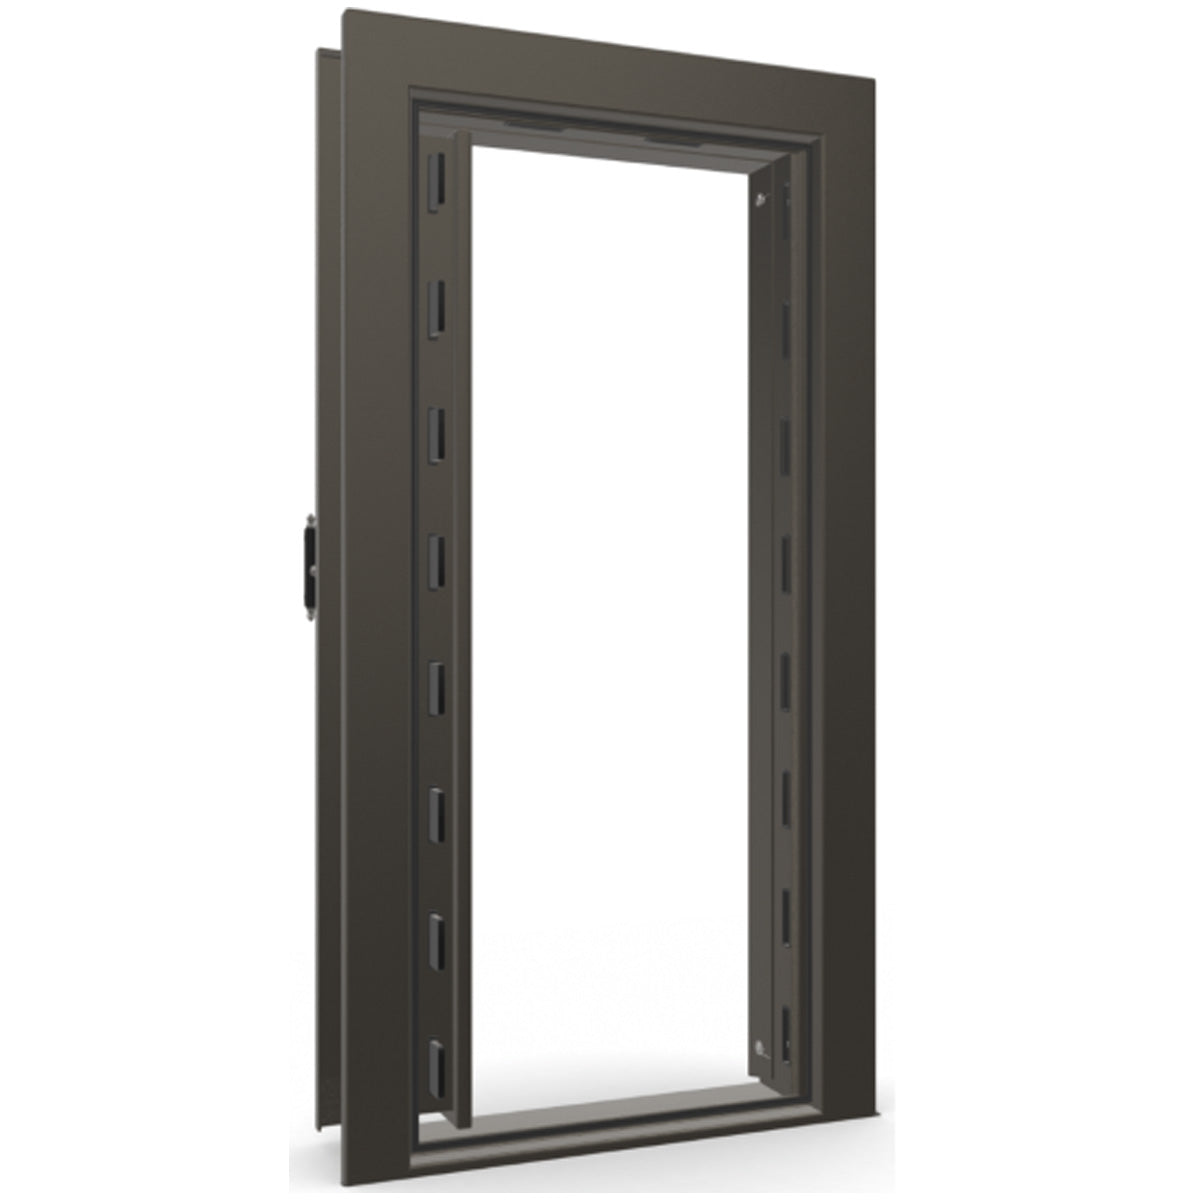 The Beast Vault Door in Gray Marble with Black Chrome Electronic Lock, Left Inswing, door open.